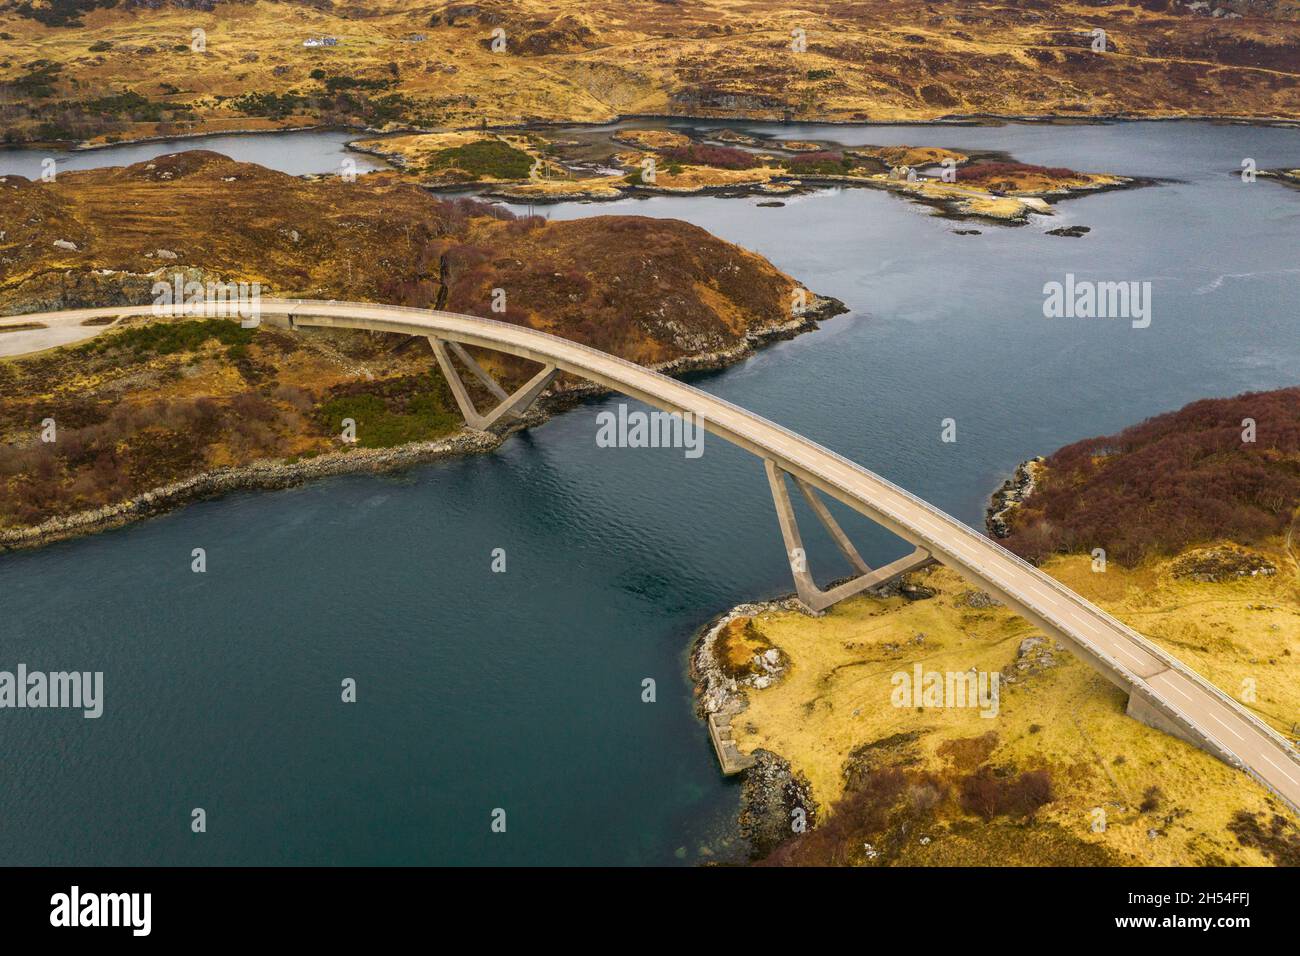 El puente Kylesku (conocido desde 2019 por su nombre gaélico Drochaid a' Chaolais Chumhaing) es un puente de hormigón claramente curvado. Foto de stock